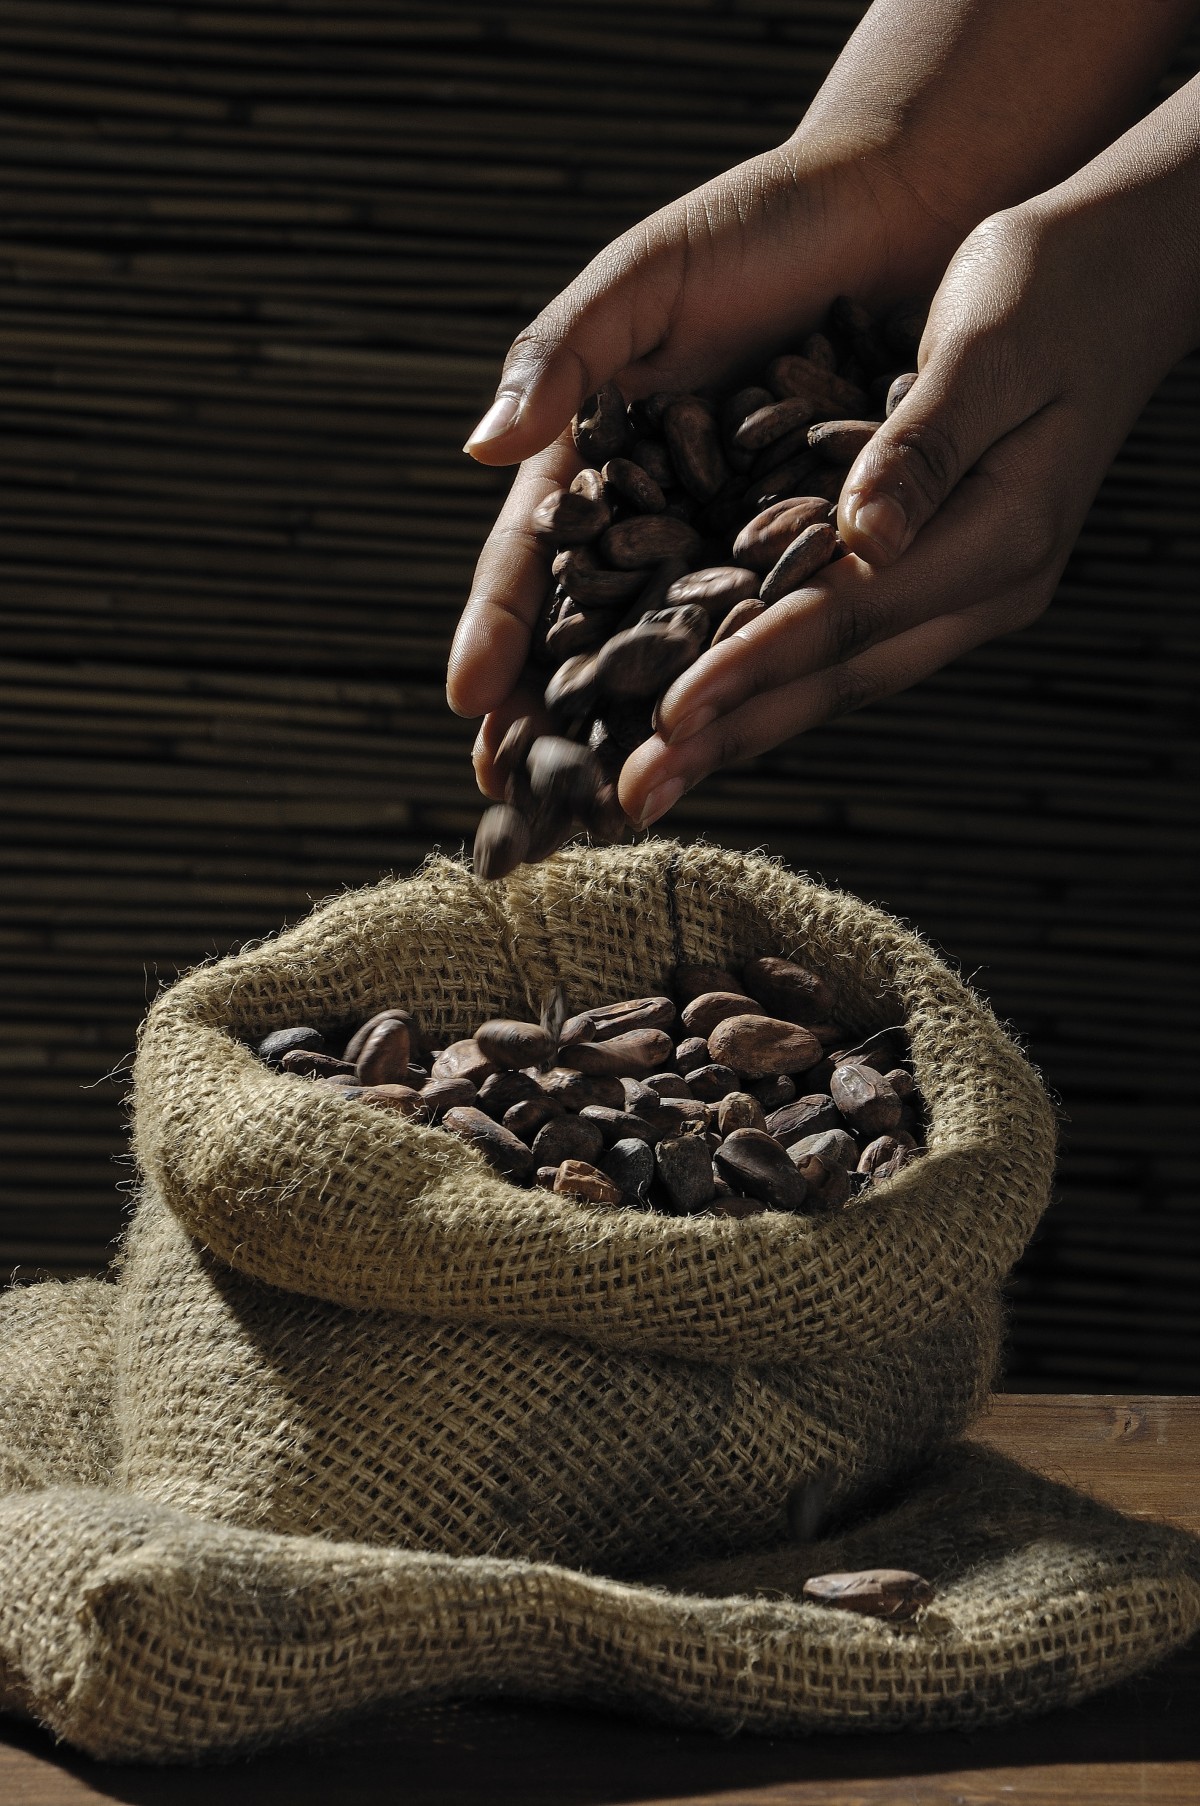 La crisis de suministro de cacao en Ghana obliga a posponer más entregas